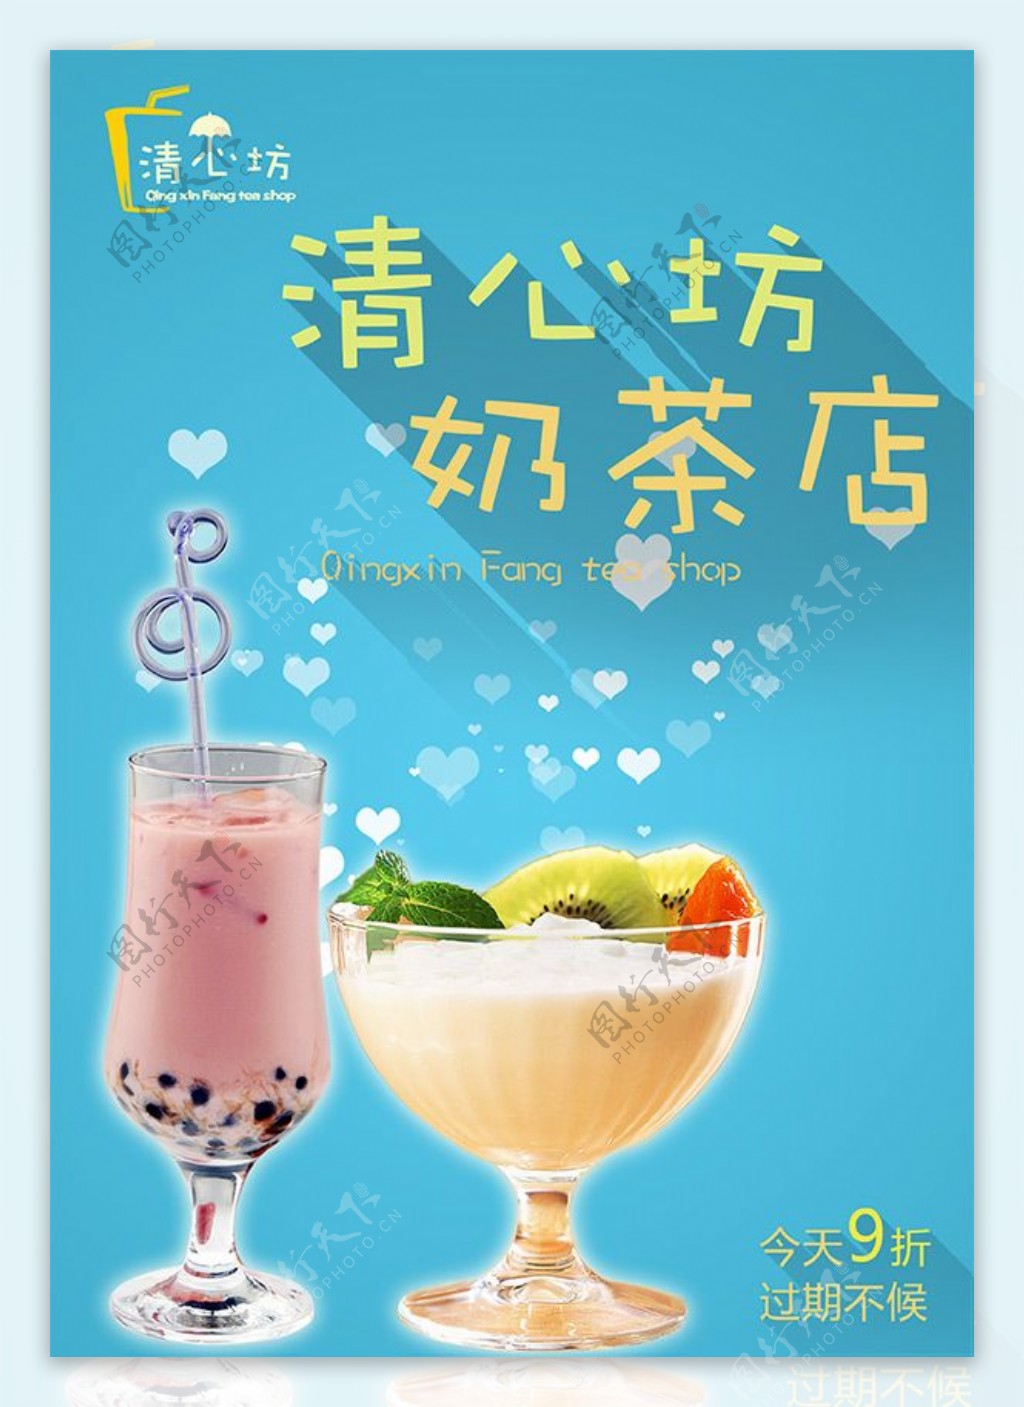 夏季奶茶店促销活动海报设计PSD素材下载